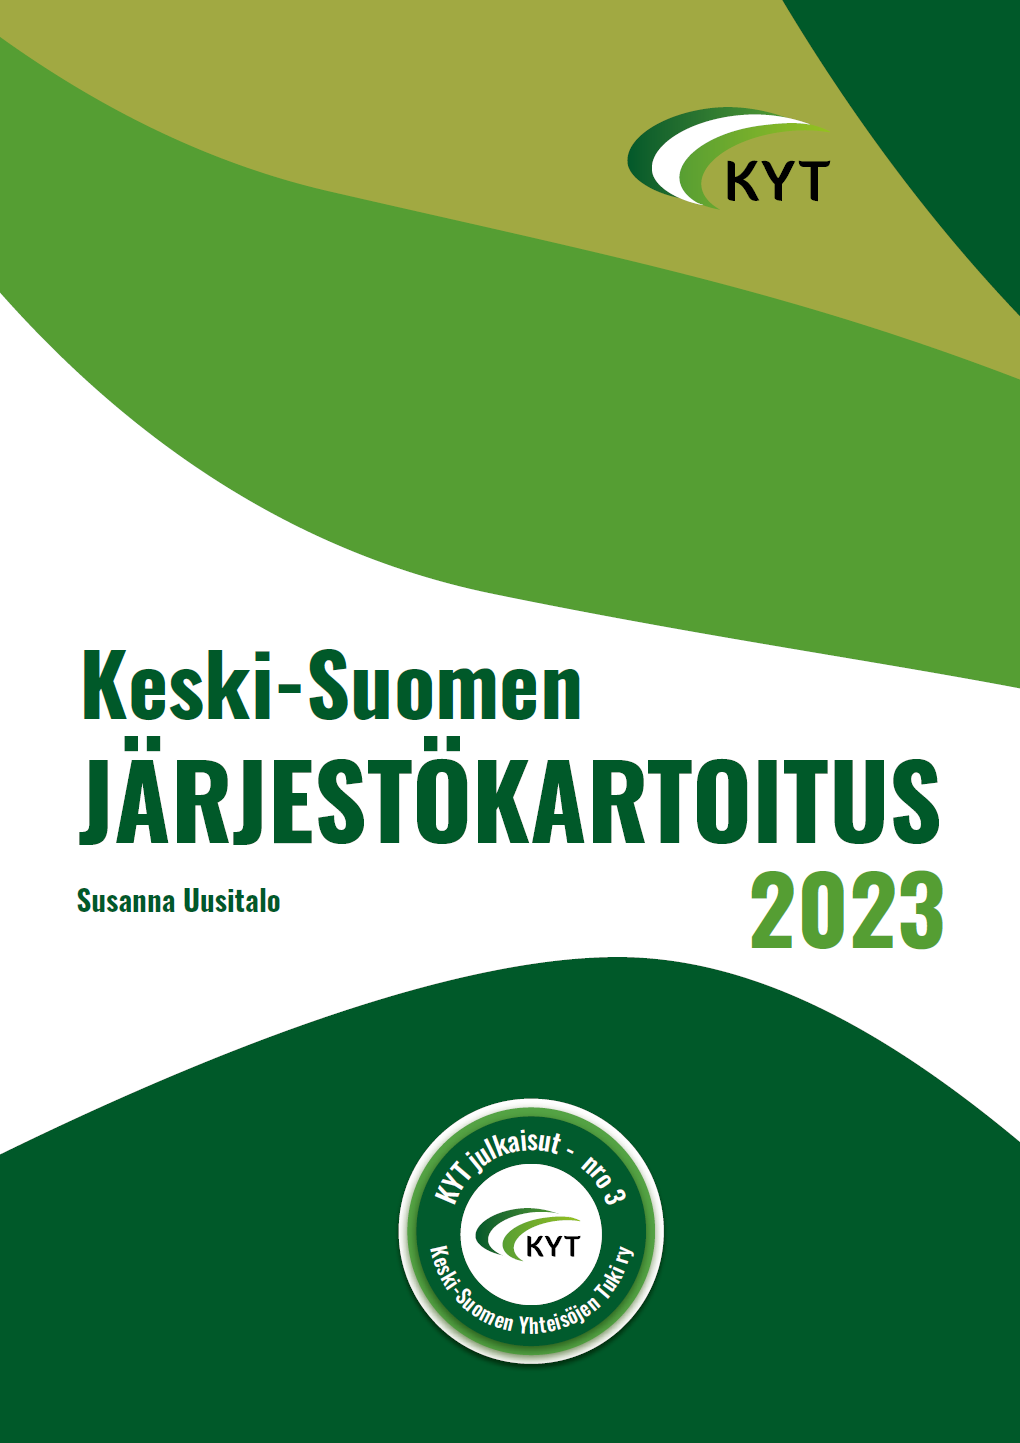 Keski-Suomen Järjestökatroitus 2023. Kansi.